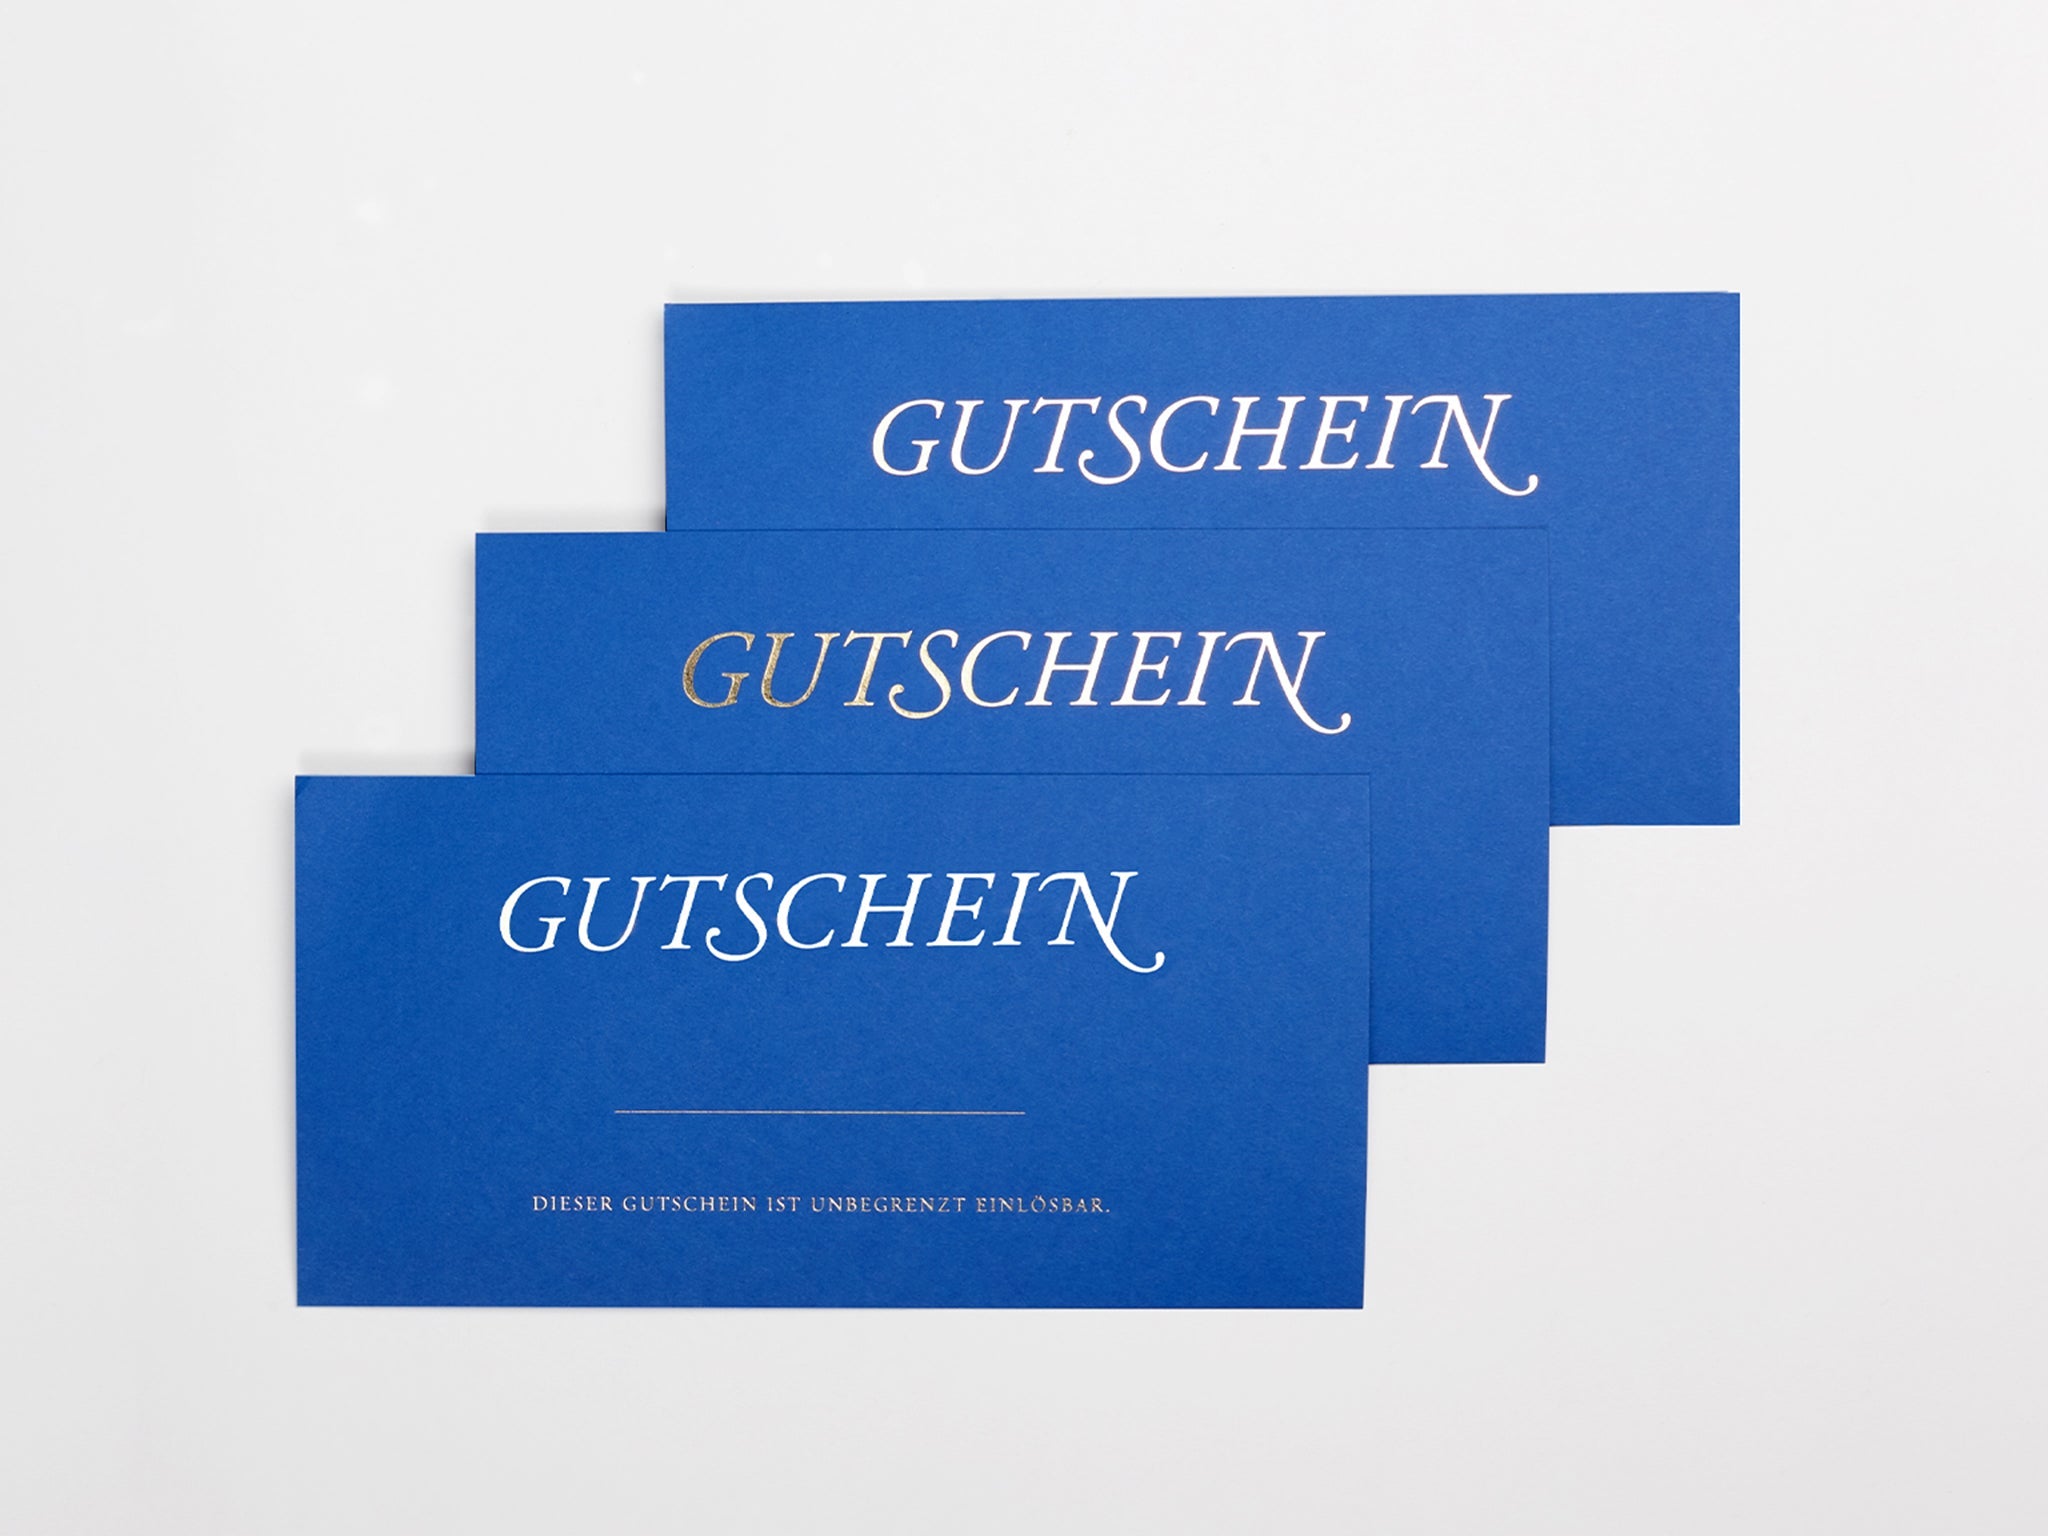 KILIAN SCHOEN CHOCOLATES: KSC Gutscheine Banner